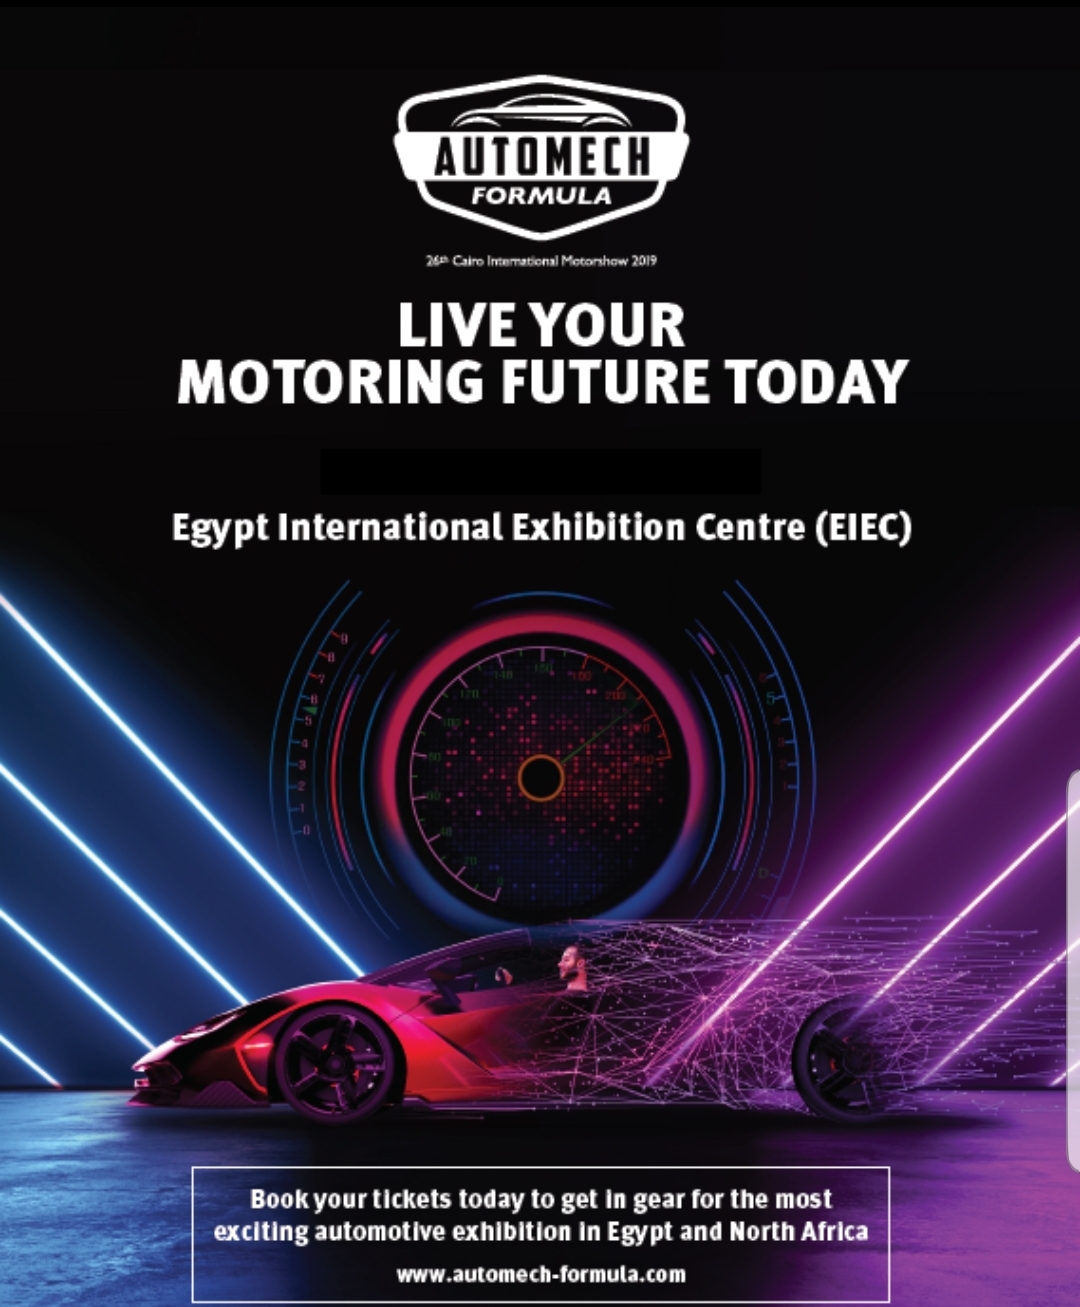 موعد جديد لمعرض القاهرة الدولي للسيارات "أوتوماك فورميلا" بشهر ديسمبر 2019